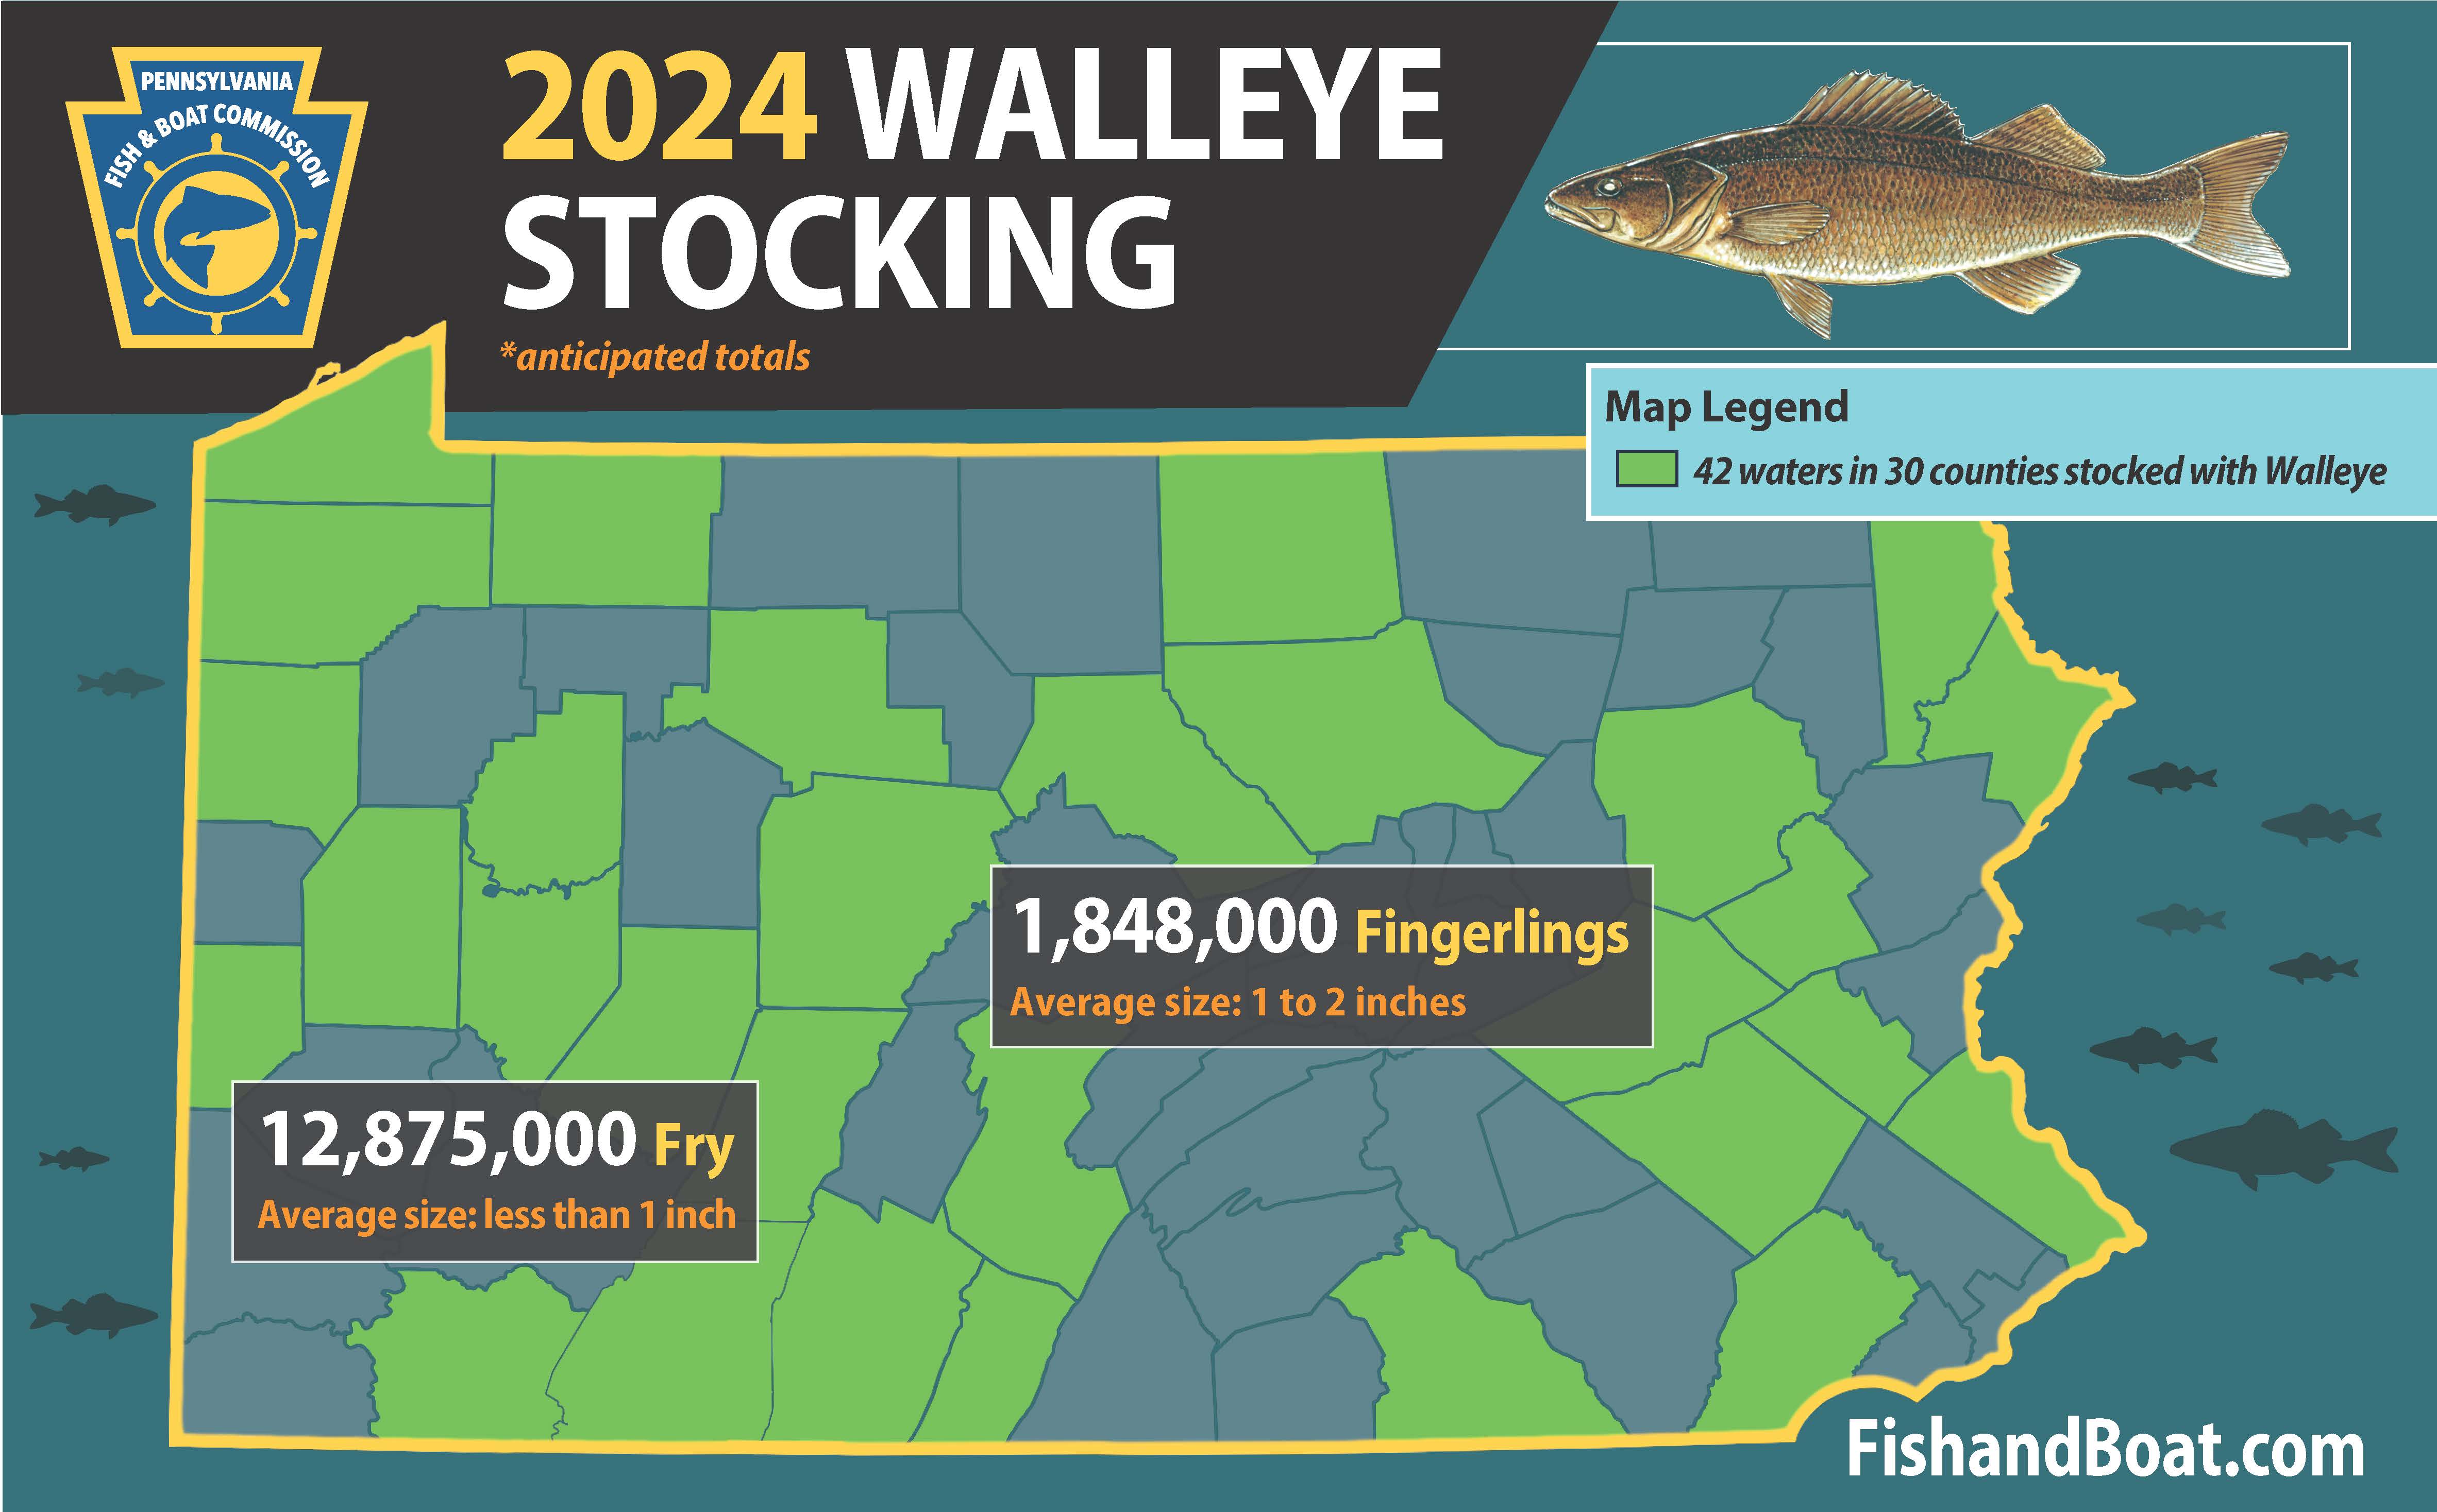 https://www.fishandboat.com/Fishing/Stocking/PublishingImages/2024-Walleye-Stocked-infographic.jpg